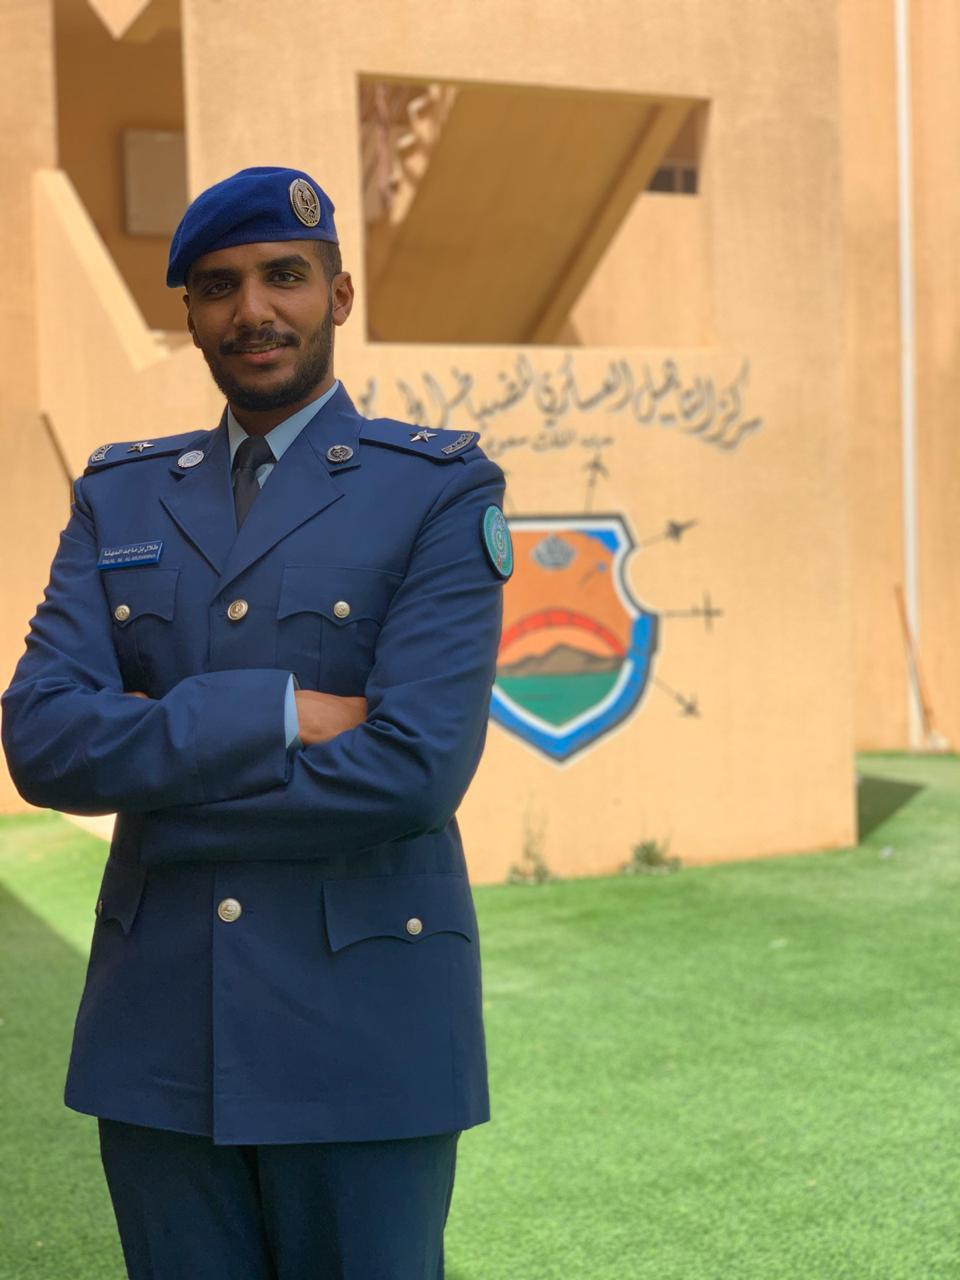 “المهنا” يحتفل بتخرج إبنه برتبة “ملازم” من كلية الملك فيصل الجوية